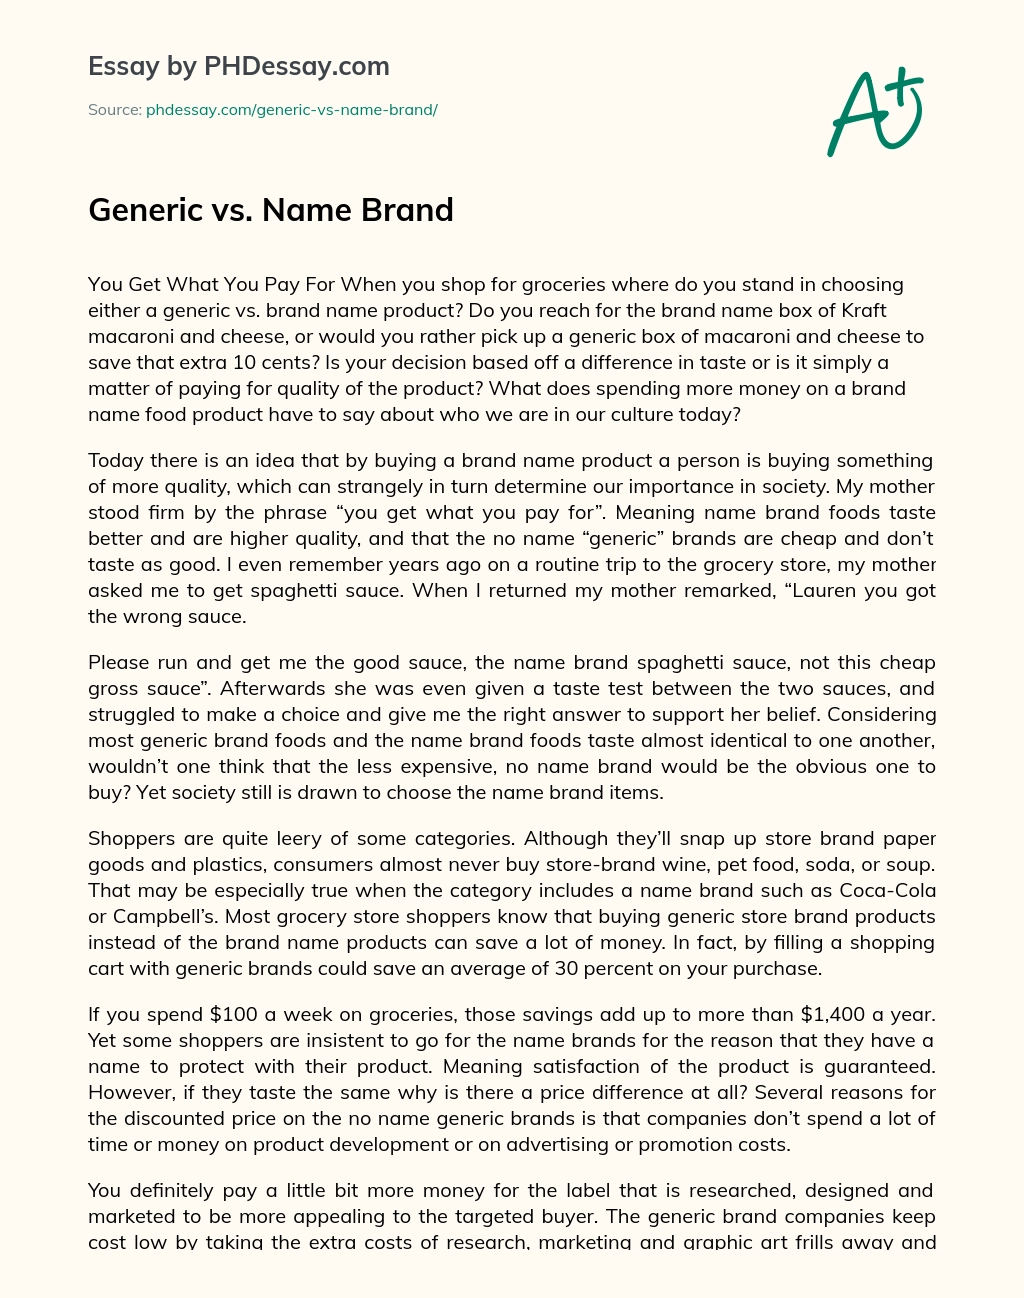 Generic vs. Name Brand essay